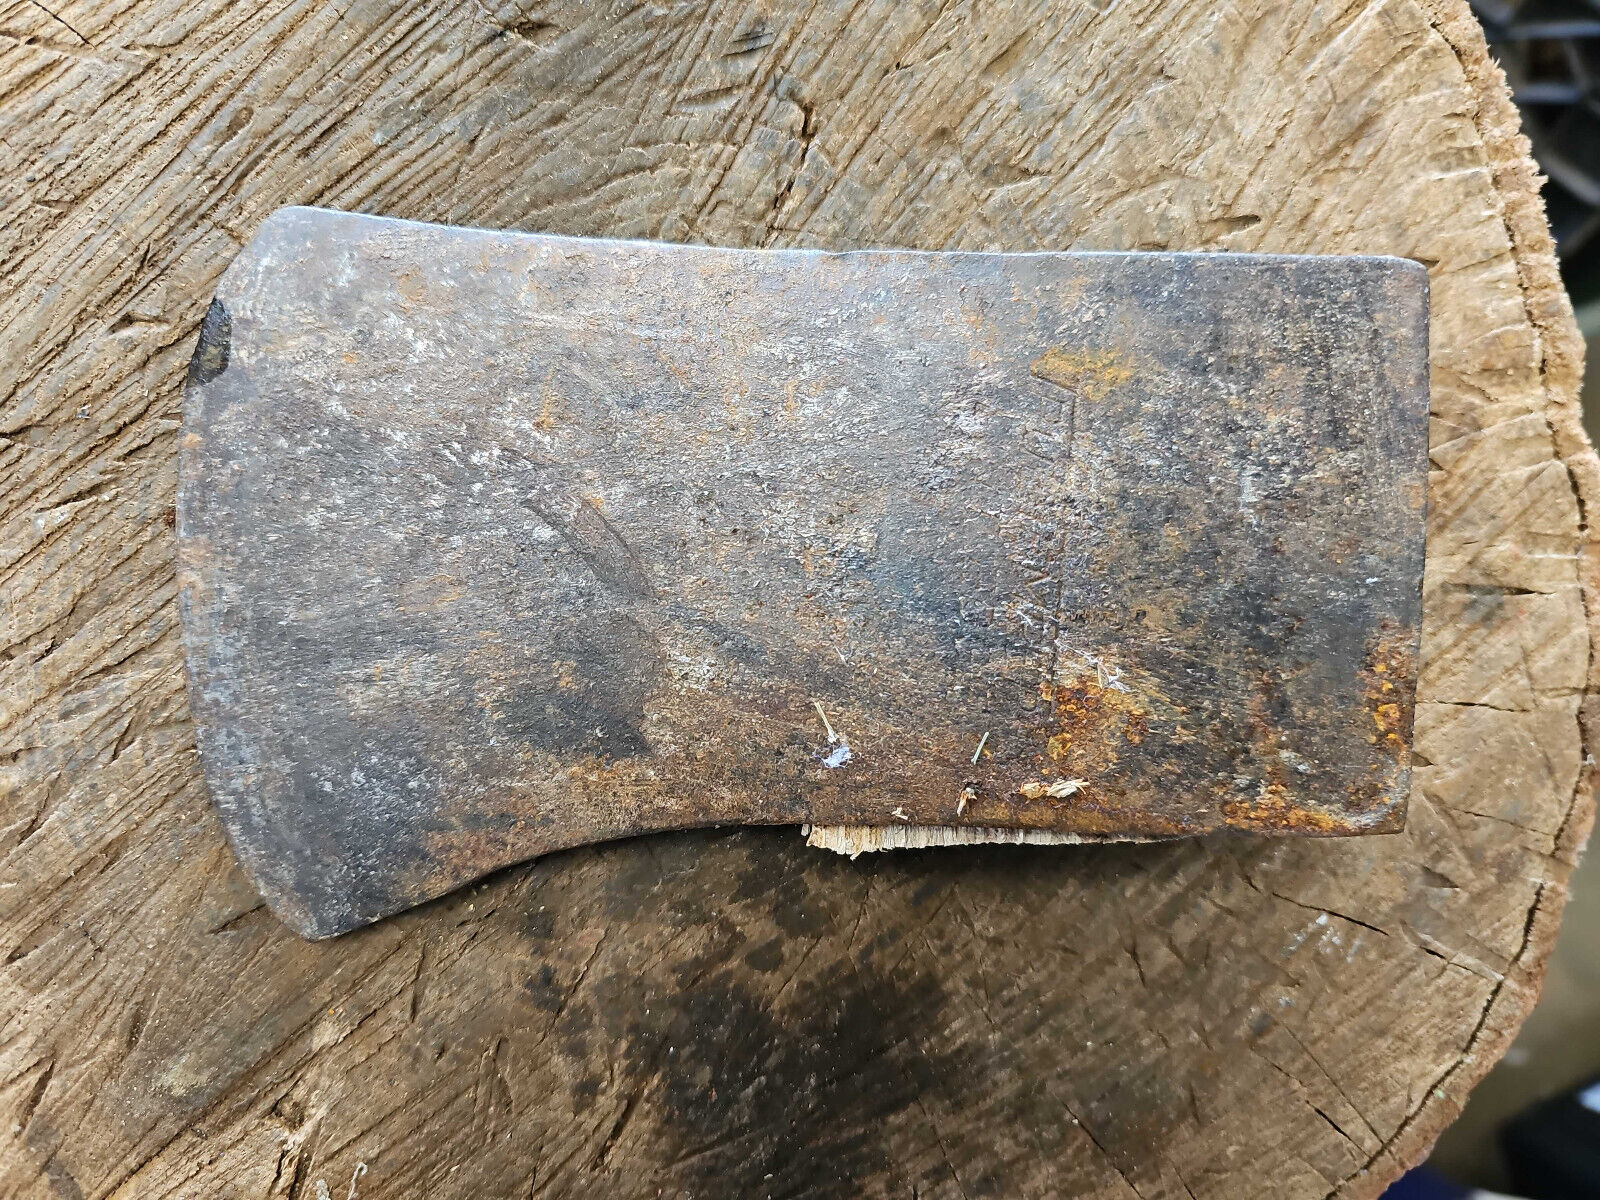 Vintage Flint Edge axe head 3lb 6.5oz 7x4.5